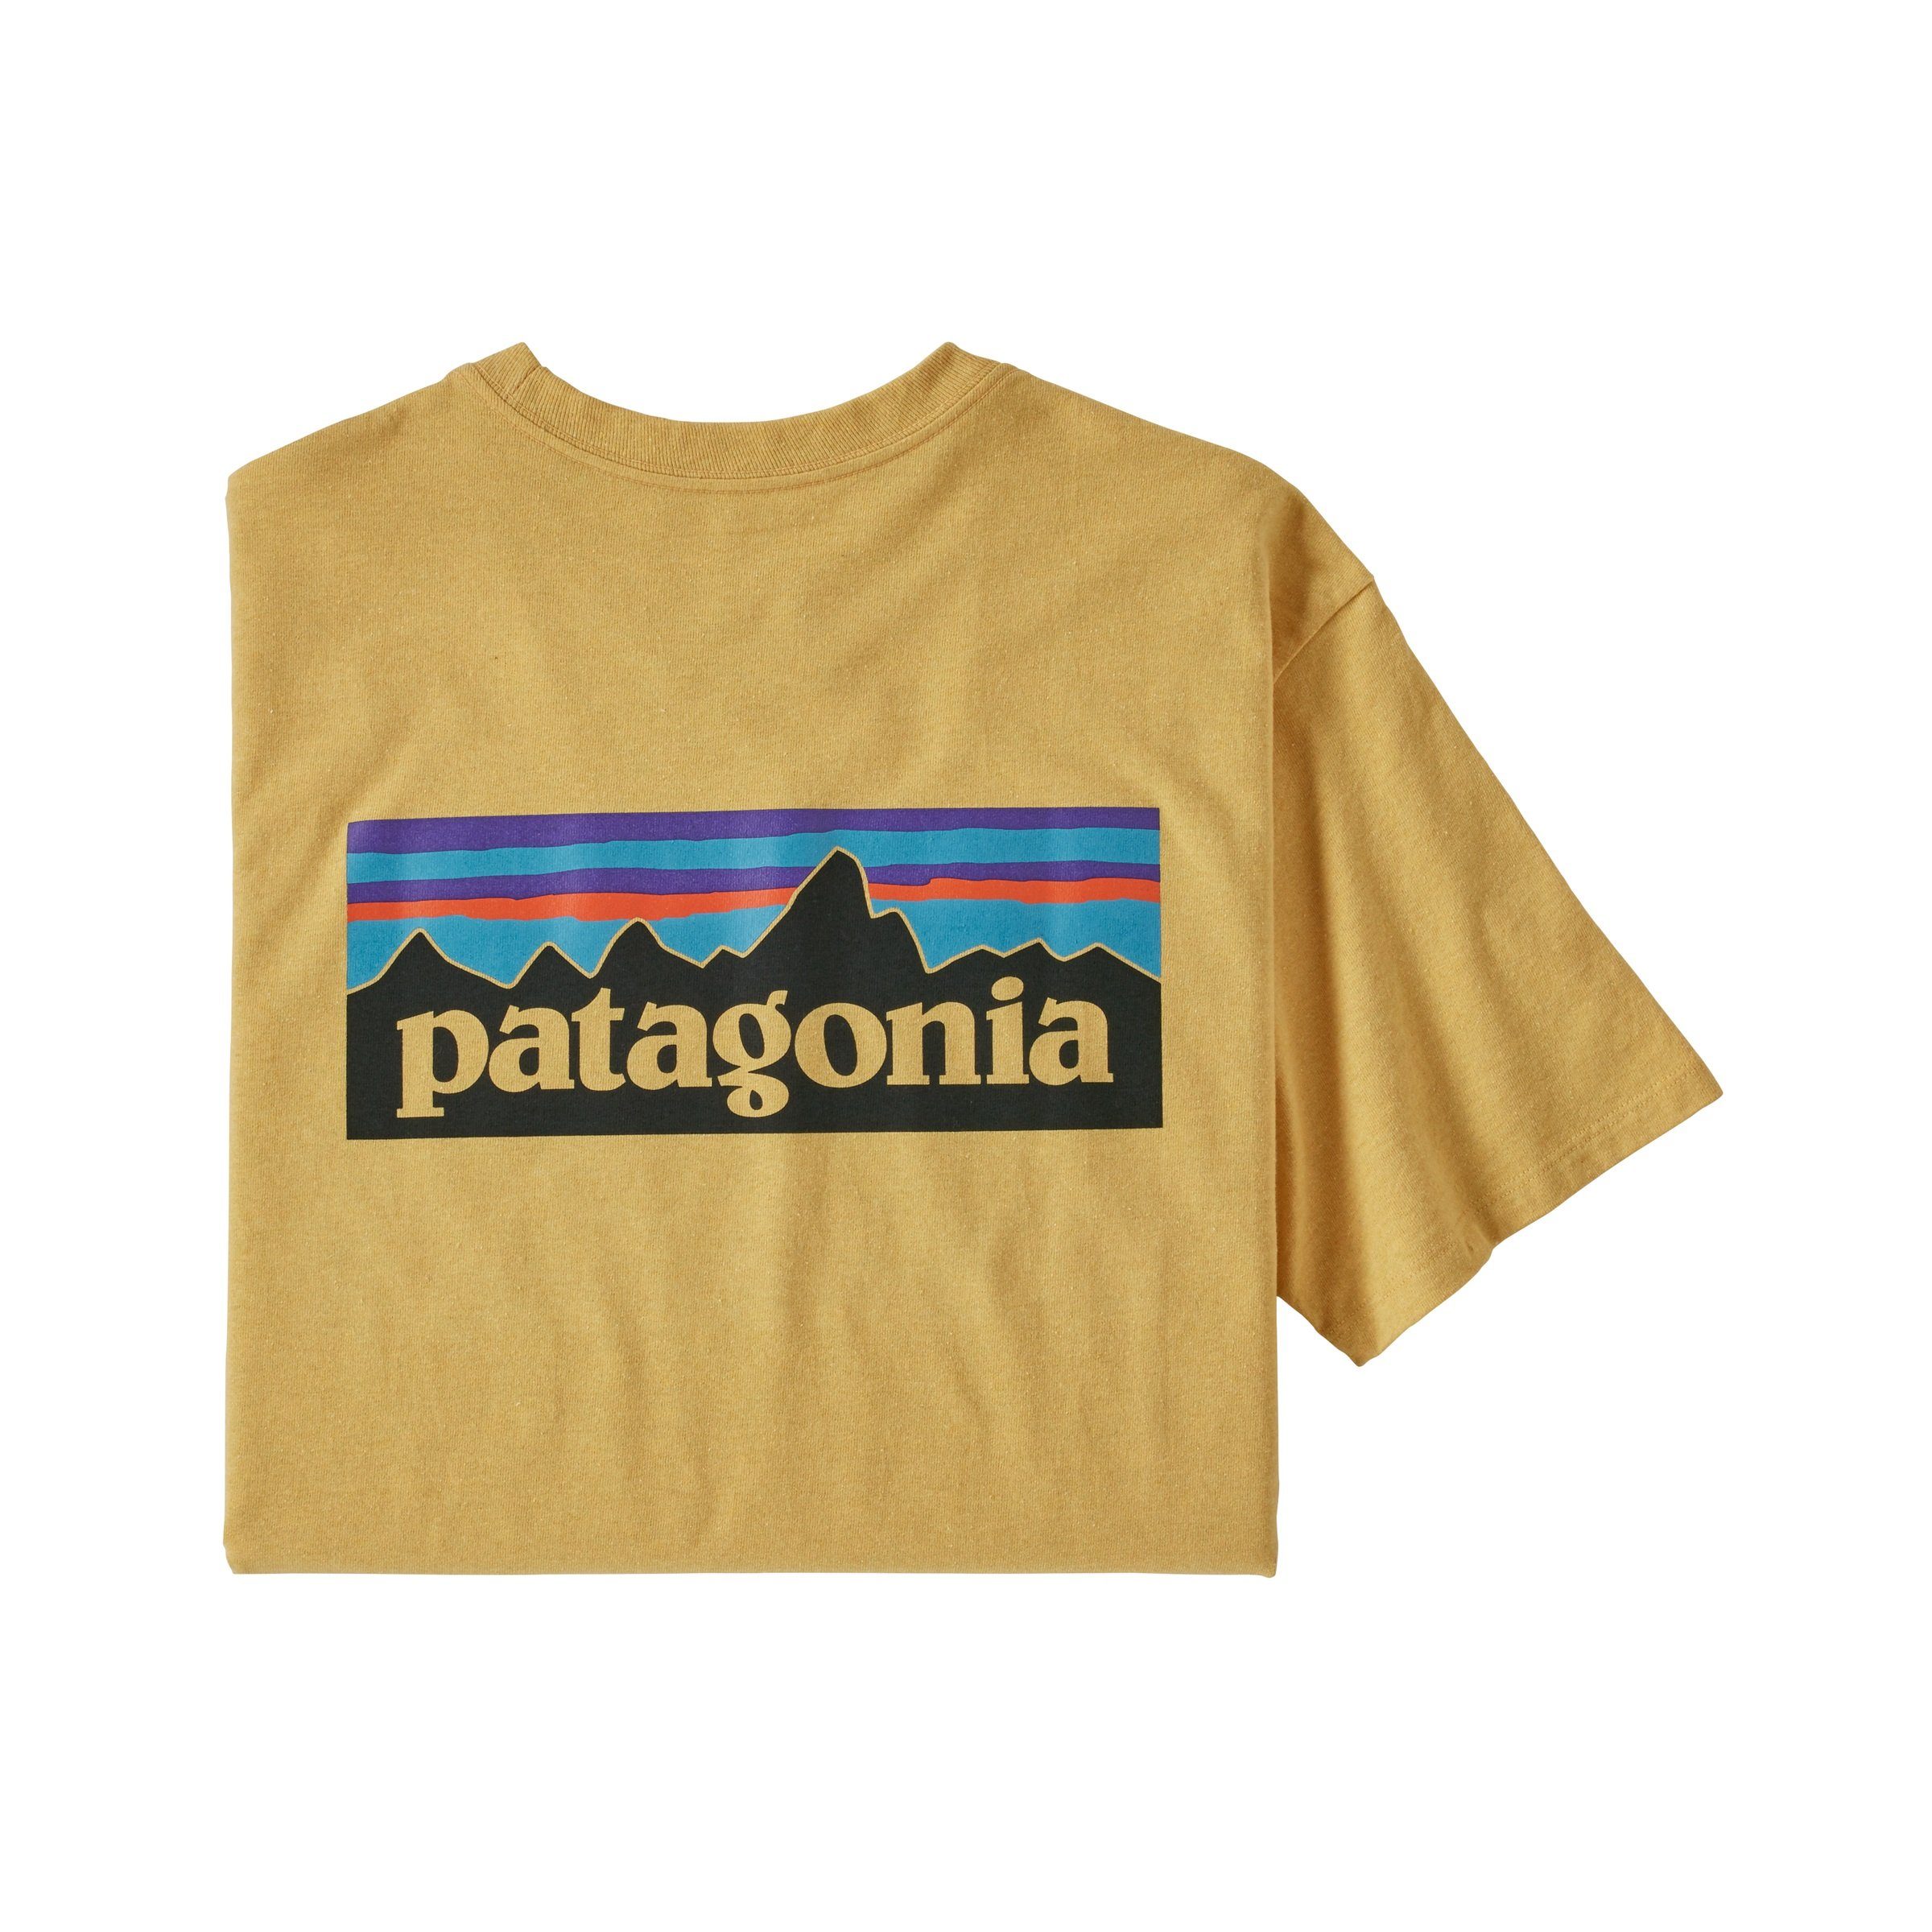 Adult Patagonia T-Shirt T-Shirt P-6 Herren Responsibili-Tee Patagonia white Logo